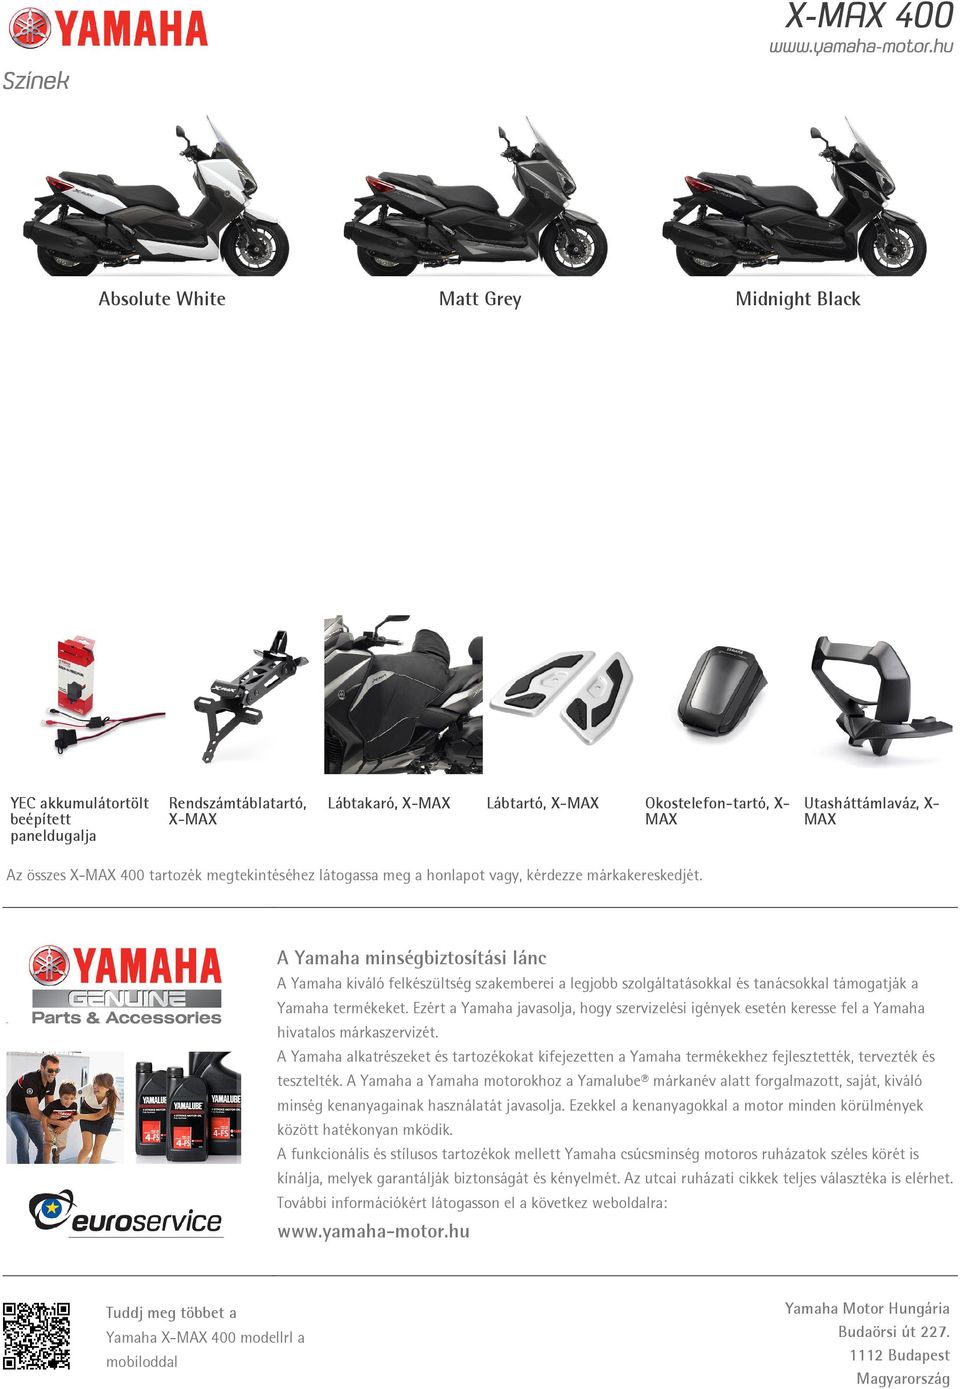 A Yamaha minségbiztosítási lánc A Yamaha kiváló felkészültség szakemberei a legjobb szolgáltatásokkal és tanácsokkal támogatják a Yamaha termékeket.